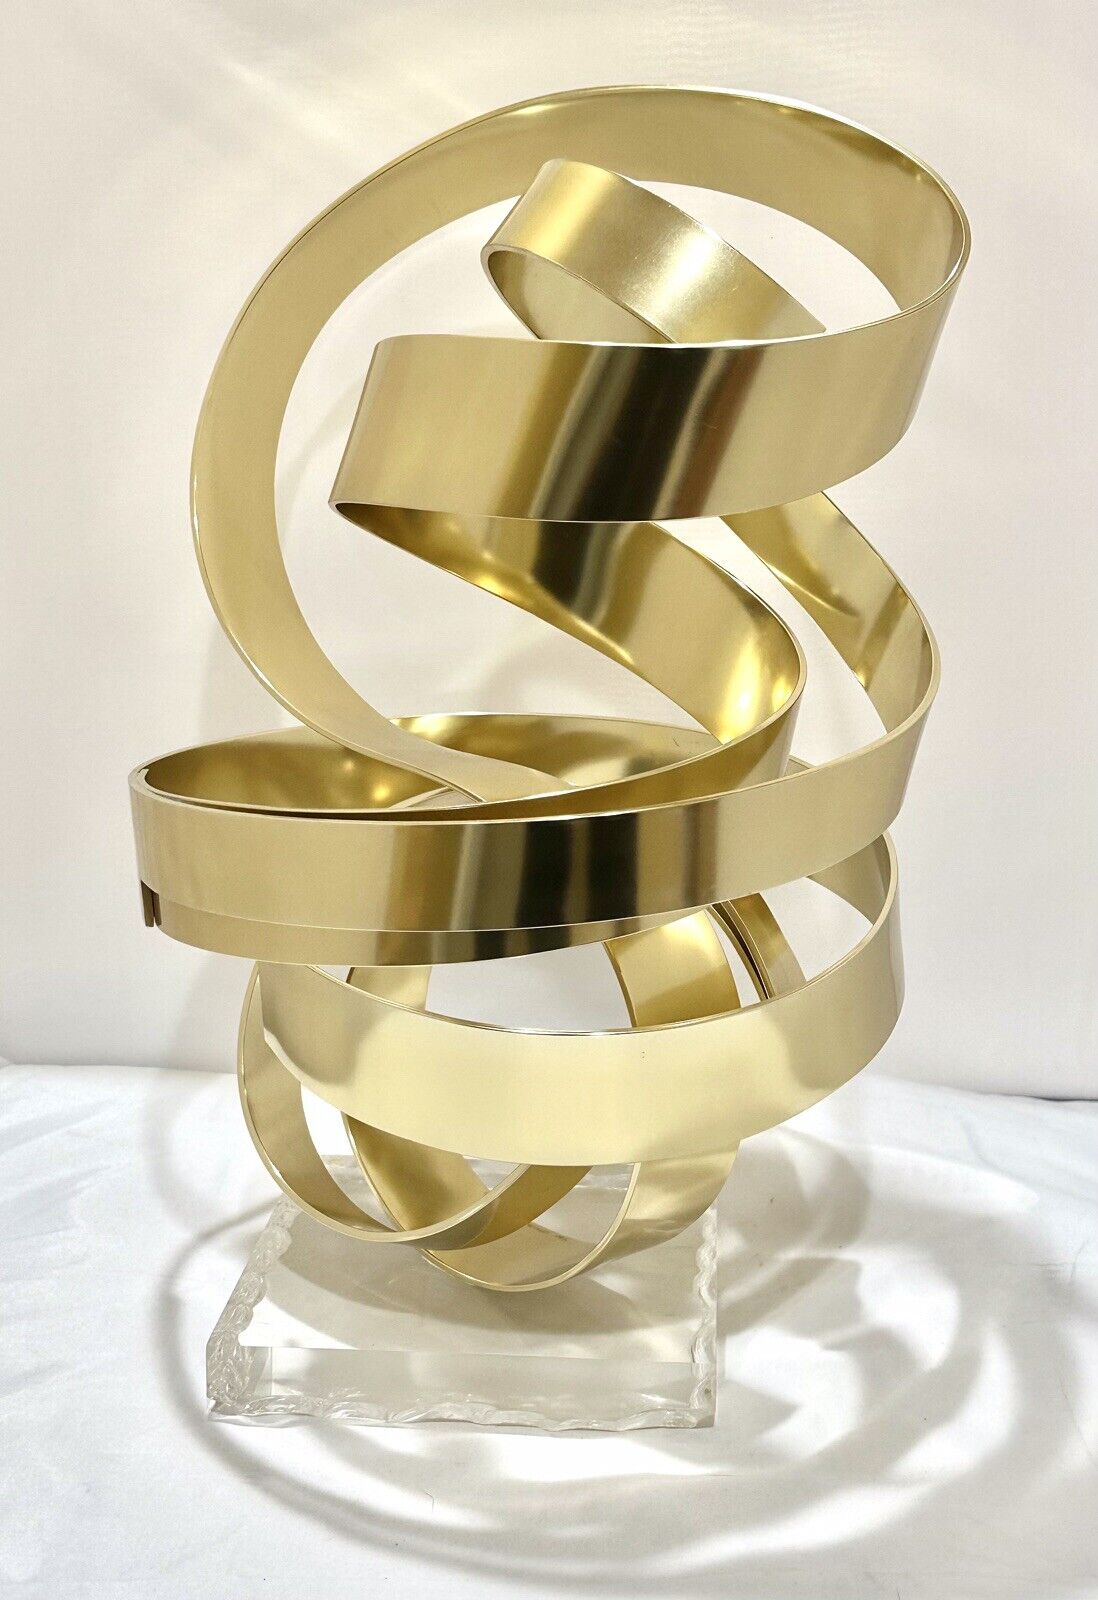 Dan Murphy Original Artwork, Anodized Aluminum Kinetic Ribbon Sculpture 2001